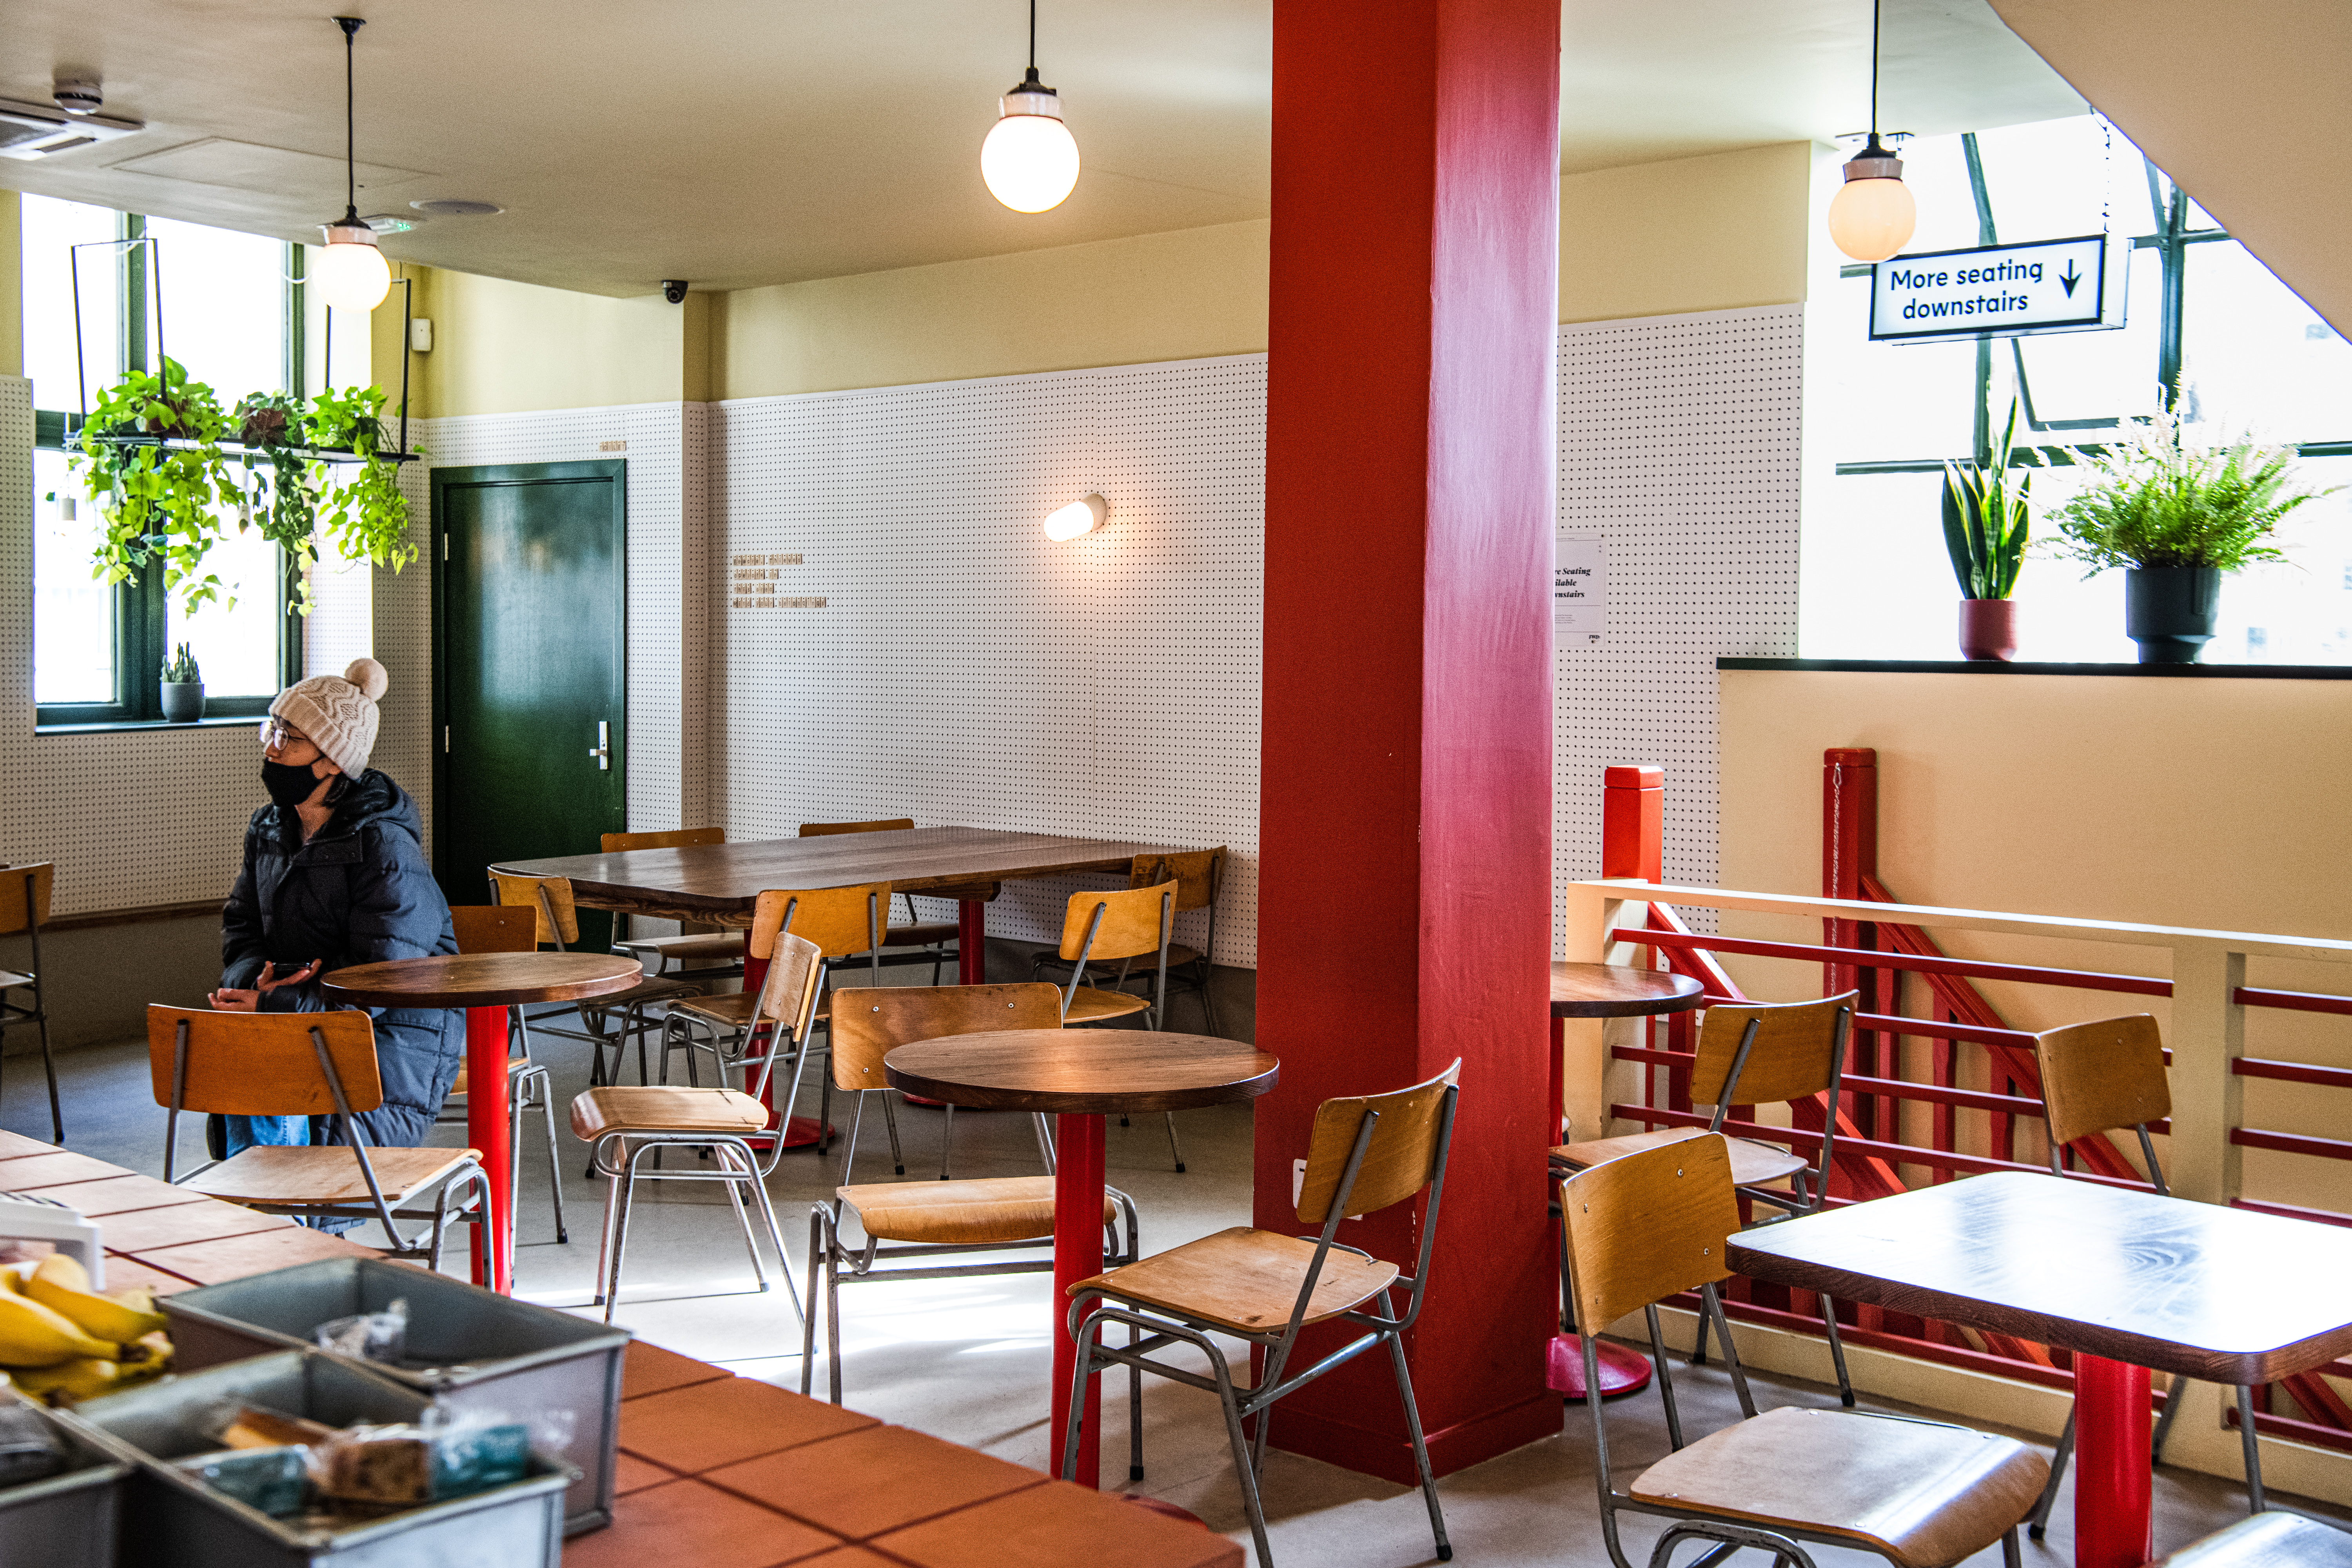 Cafeteria London Coffee na Vila Mariana 😍 alguém aqui já foi? 👻 #oqu